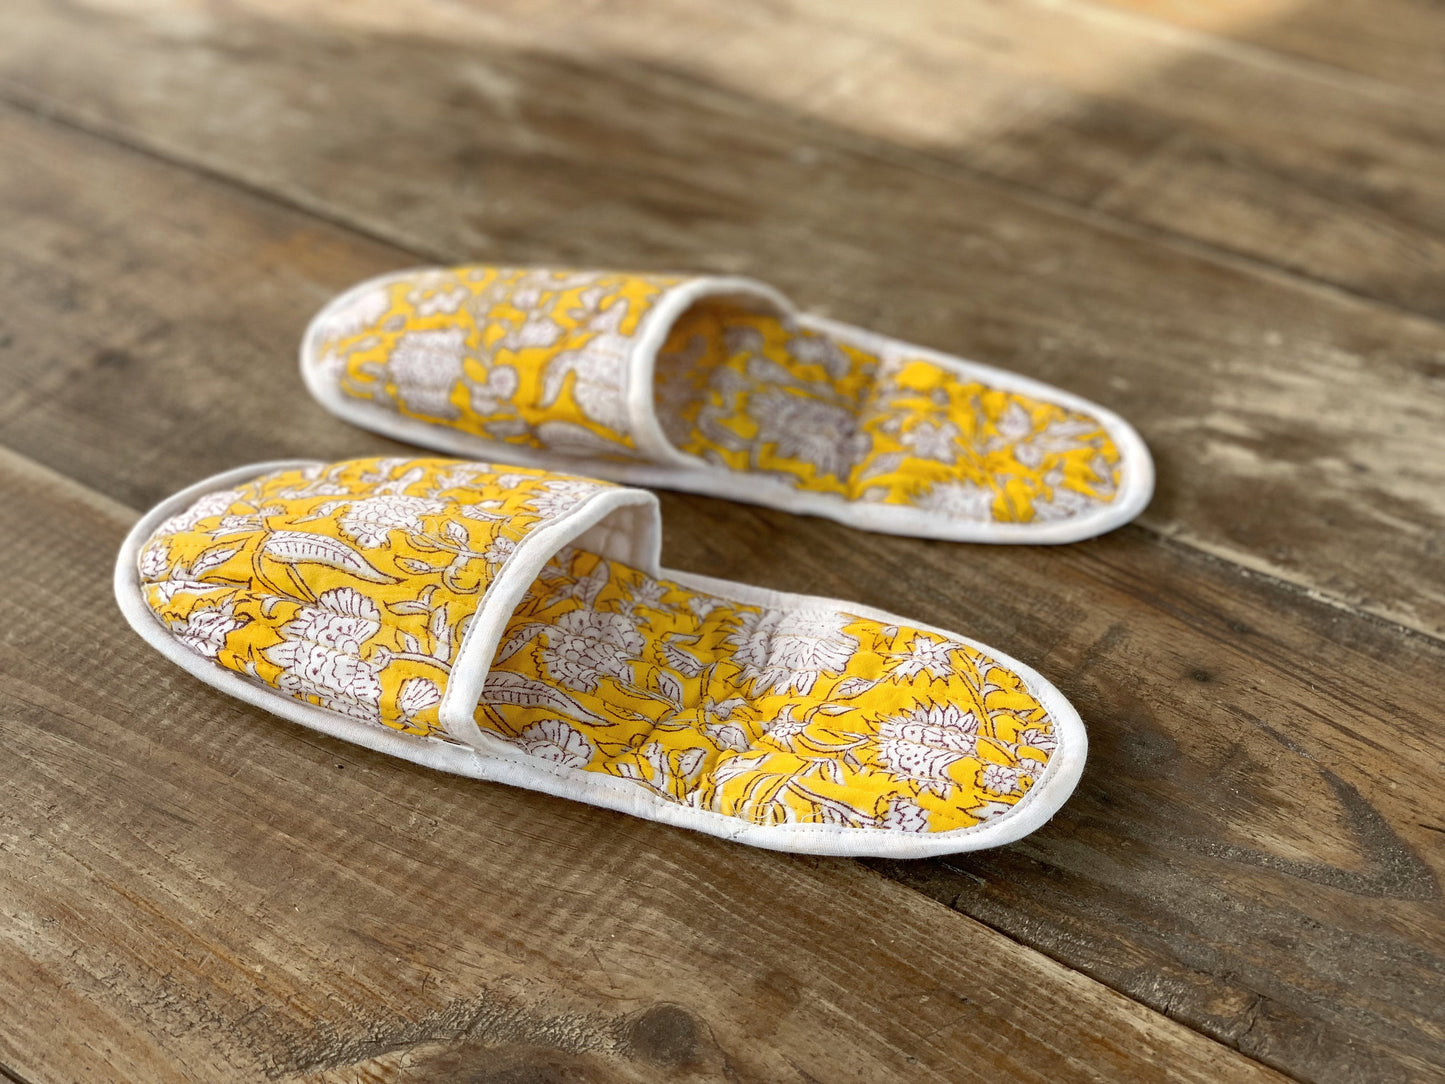 Zapatillas de viaje enguatadas con bolsa a juego · Algodón puro estampado block print en India · Zapatillas de baño ducha · Amarillo blanco